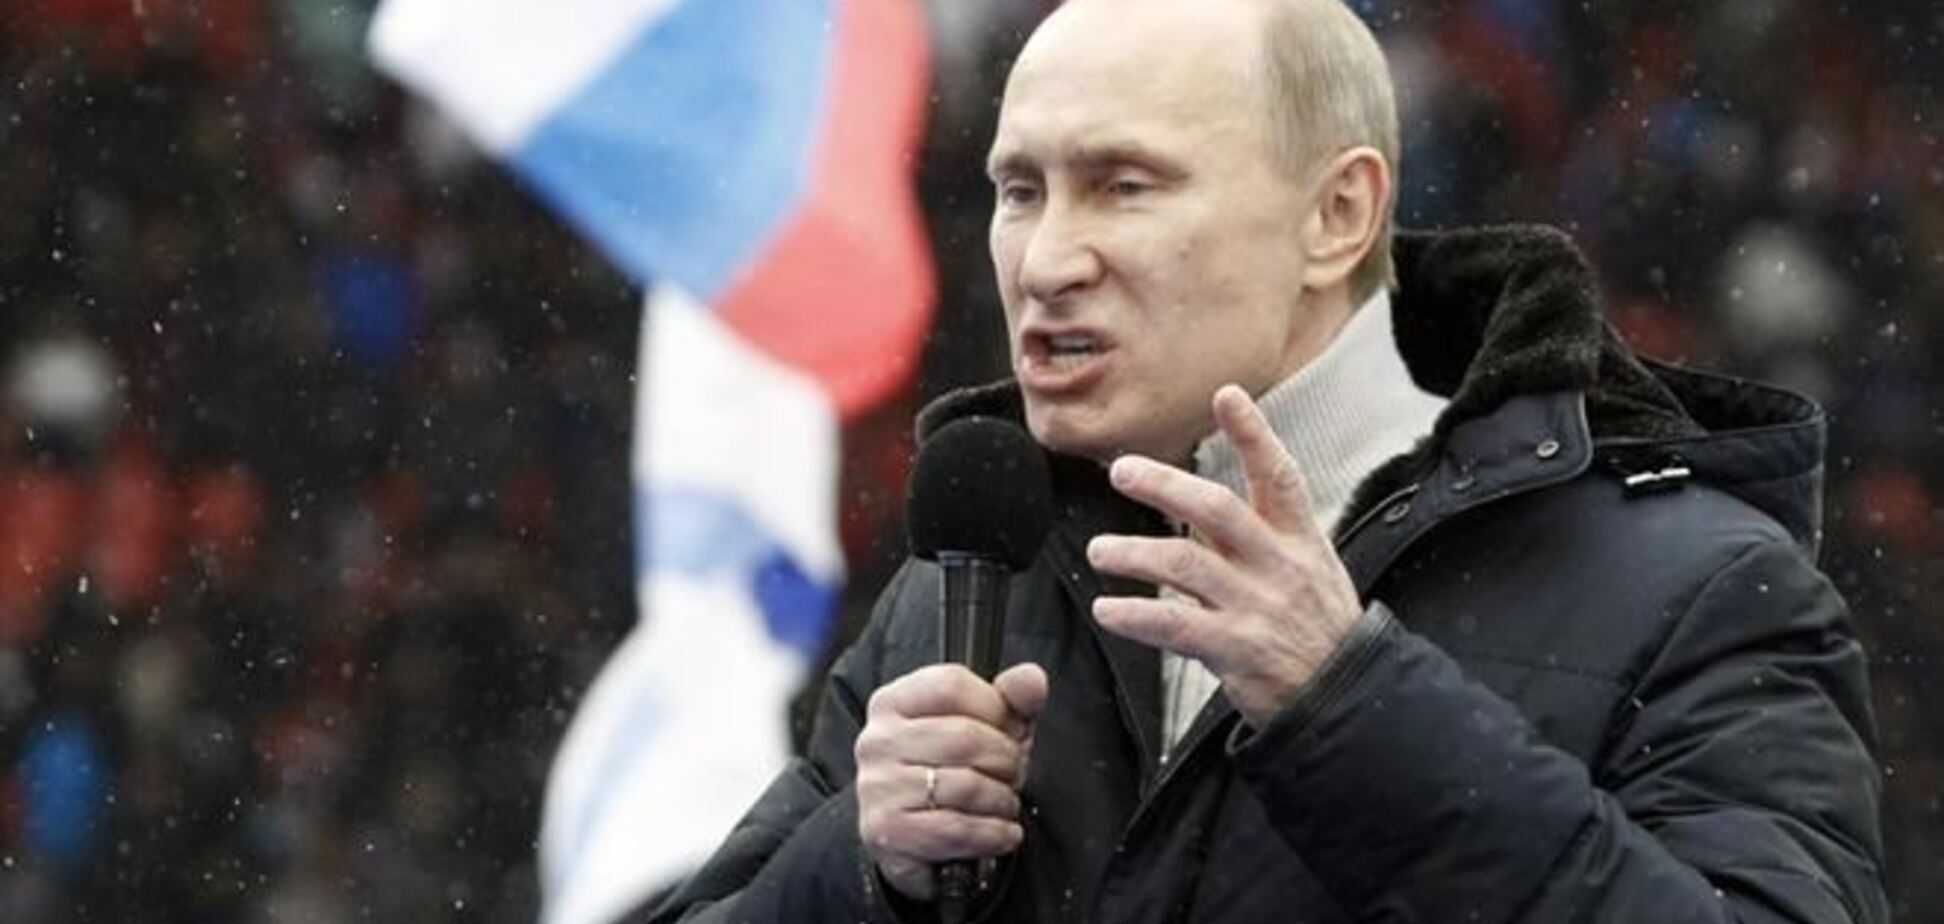 Путин тратит миллиарды долларов на промывку мозгов 'правильными новостями' - СМИ